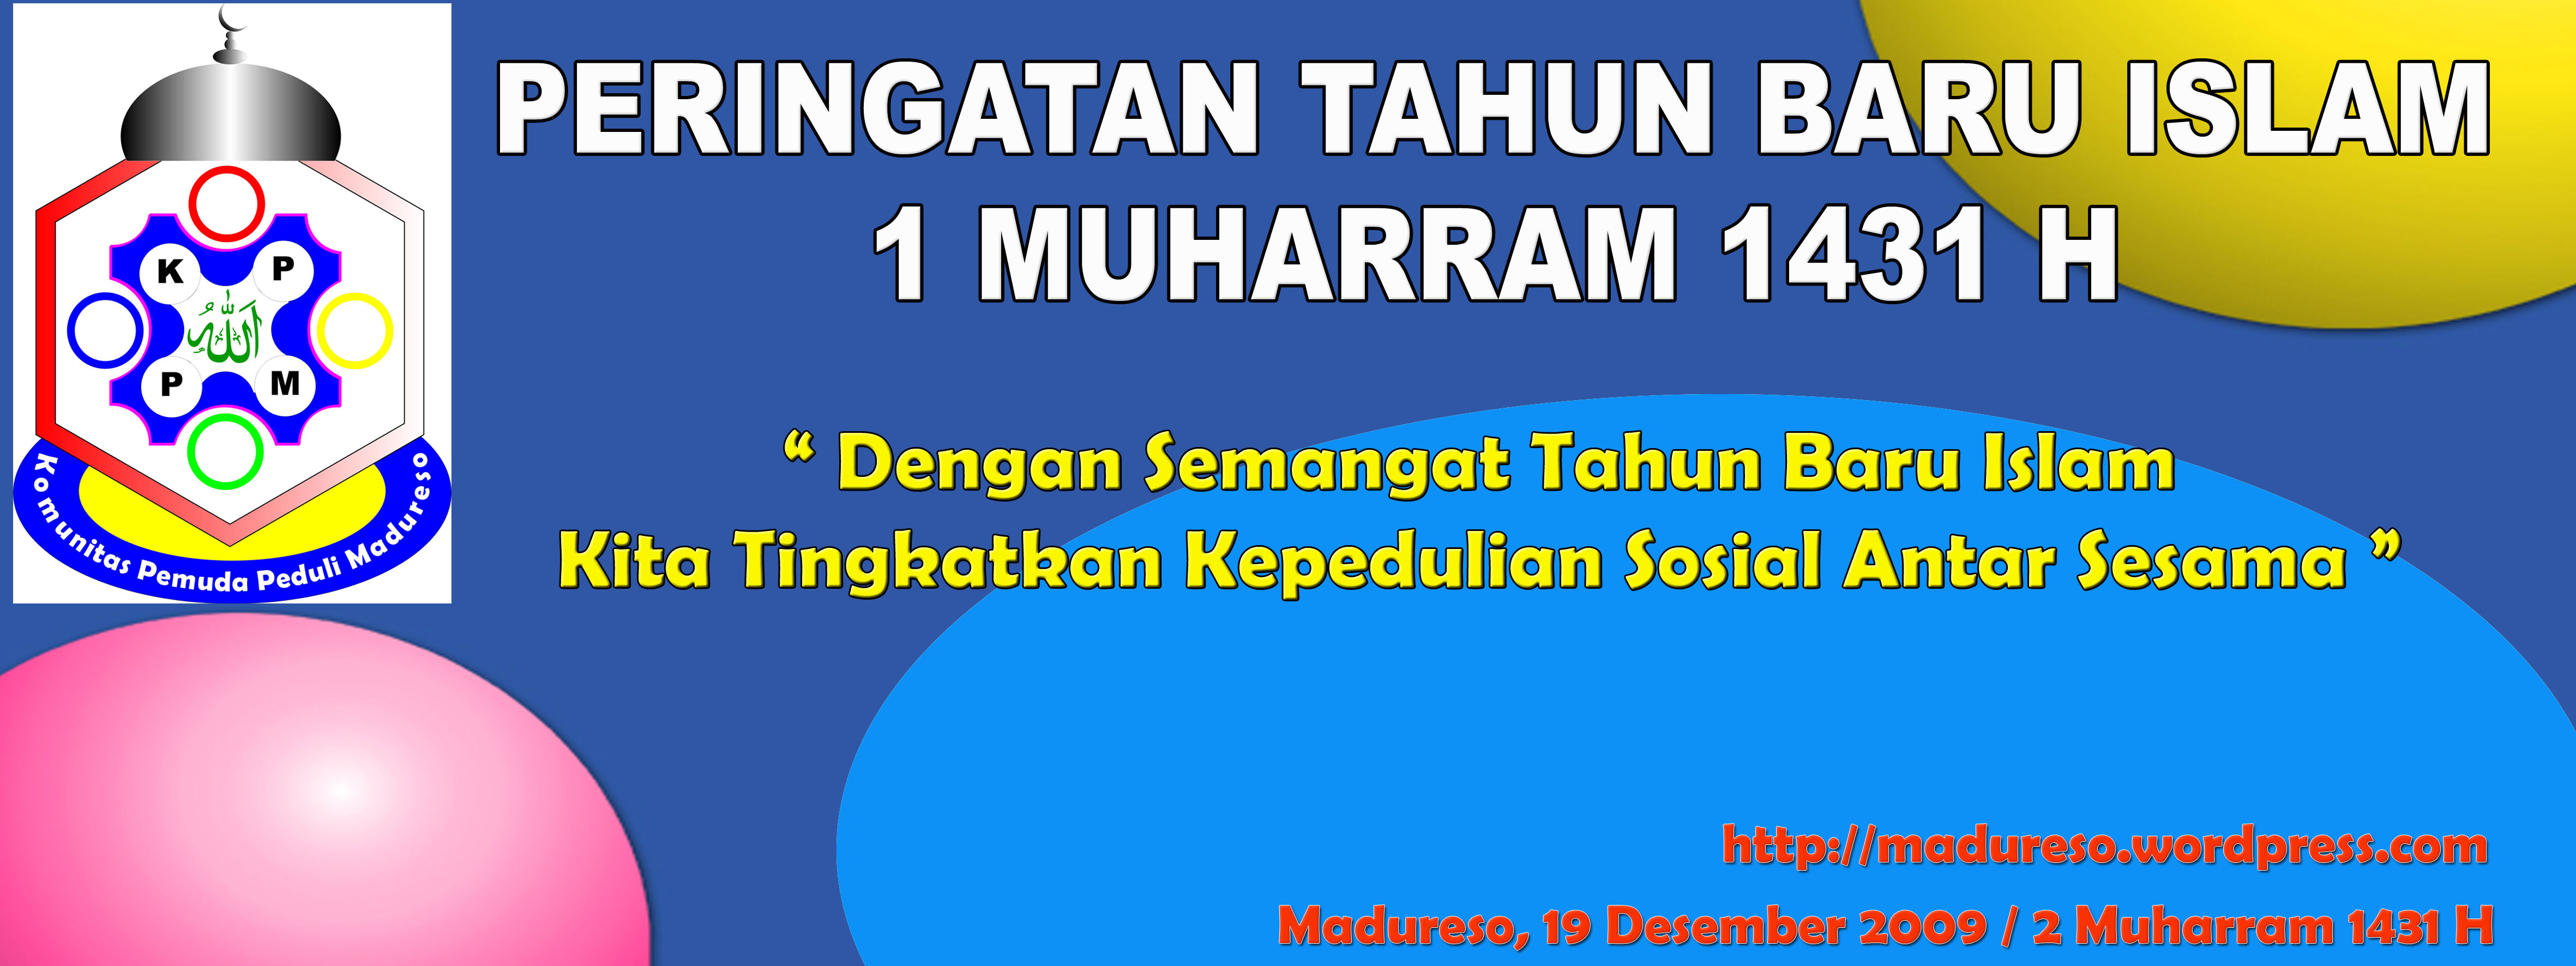 Tahun Baru Islam 1  Muharram 1440 Idola O